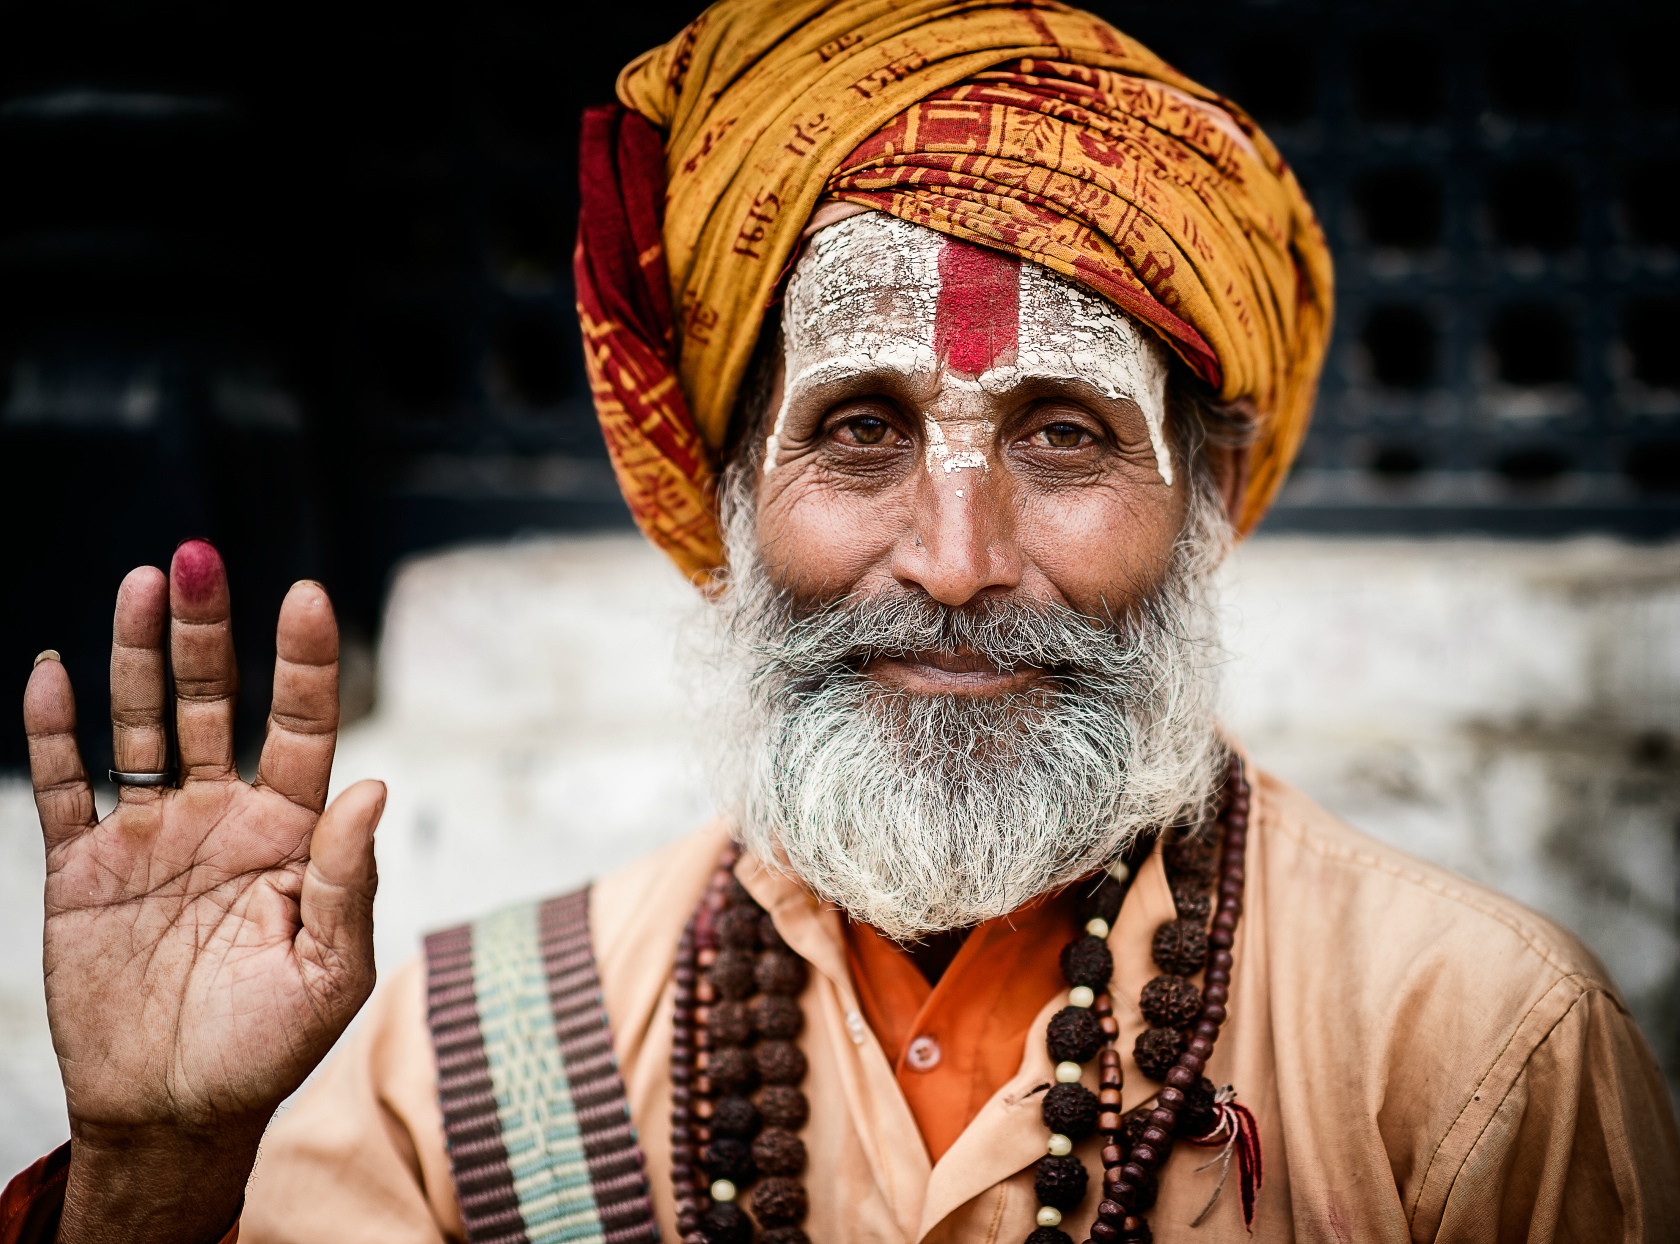 在印度遇到苦行僧,为什么不能拍照,会遇到什么麻烦